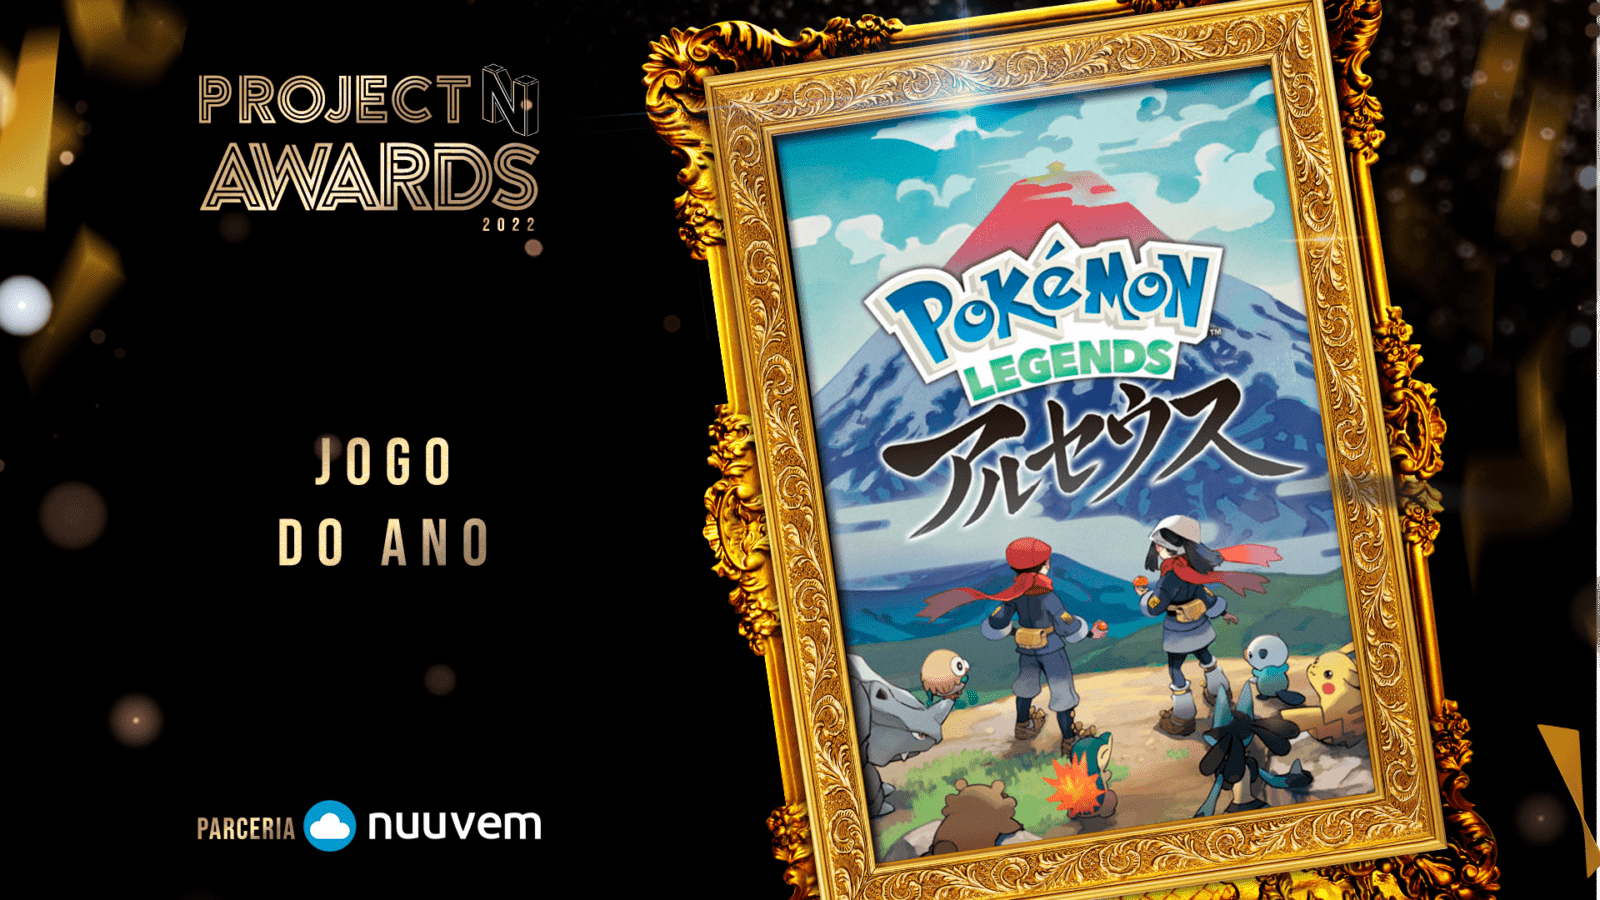 Project N Awards 2022: Pokémon Legends: Arceus ganha como Jogo do Ano, confira os vencedores